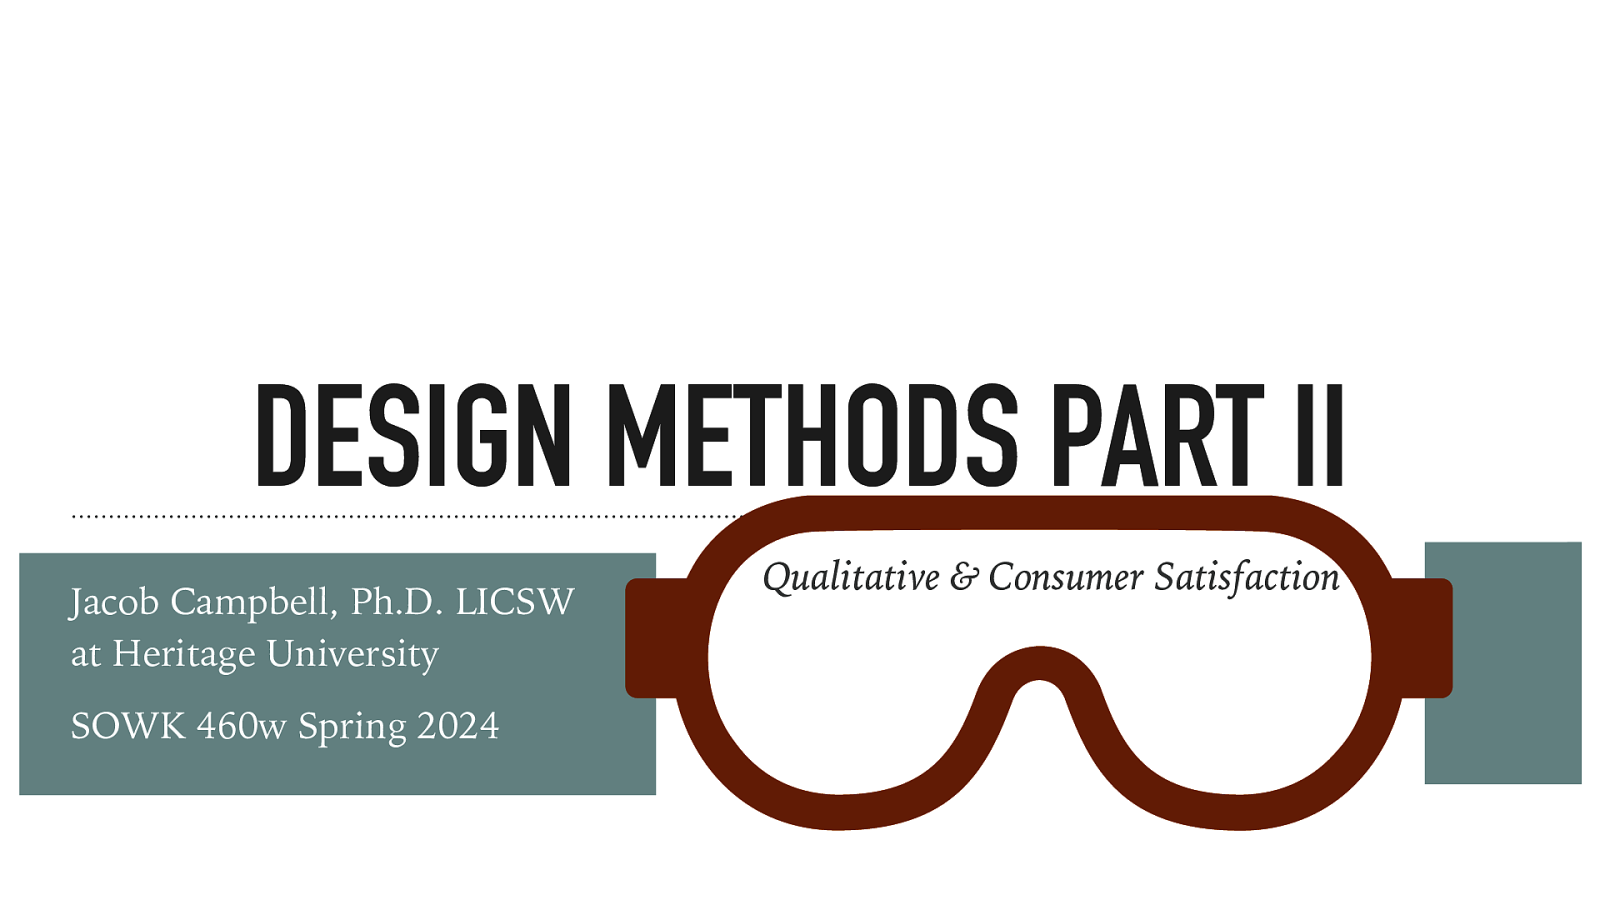 Spring 2024 SOWK 460w Week 10: Design Methods Part II